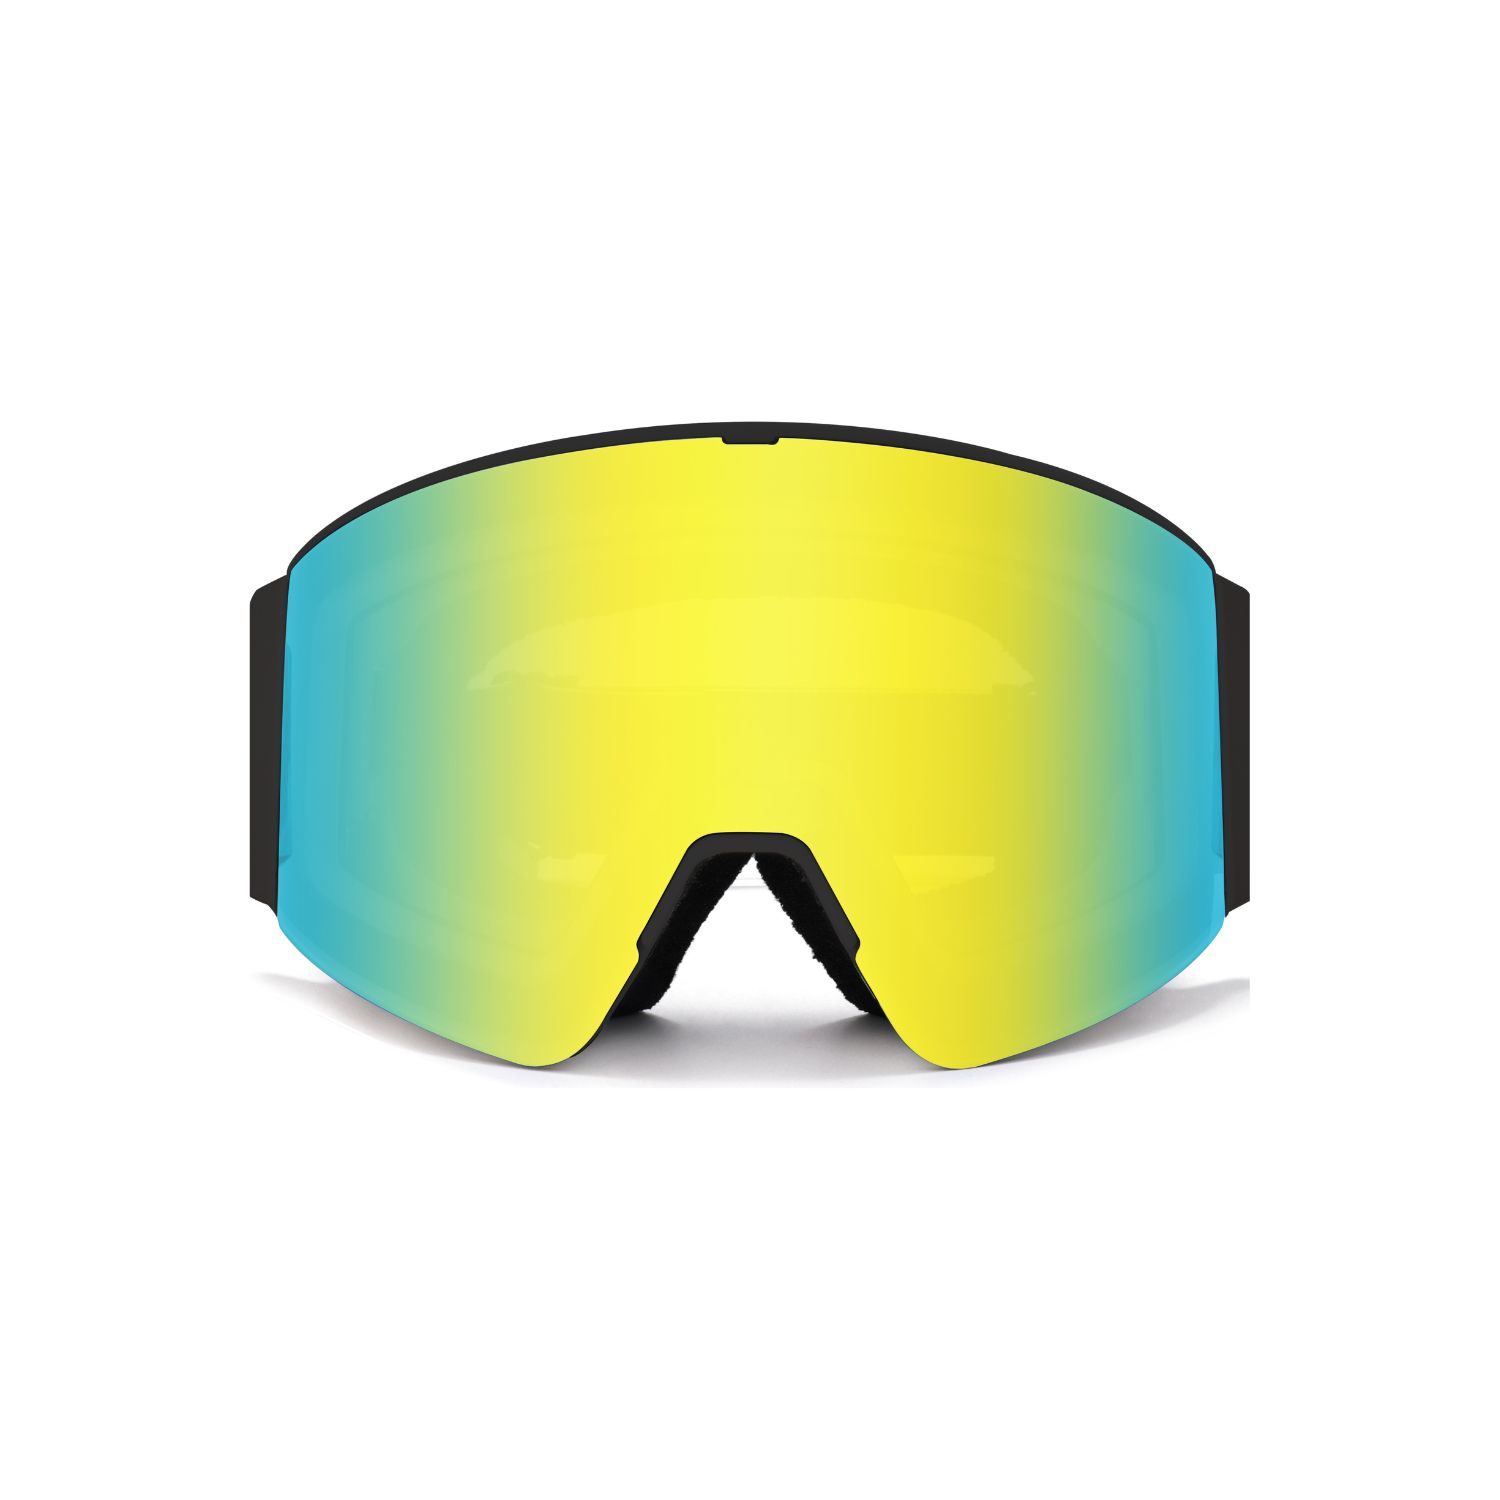 [FUJIKAZE] 電熱ゴーグルSNG-03 スノボ スキー 登山 ウィンタースポーツ用熱線タイプ曇り止めゴーグル 全面REVOミラー 99%UVカット